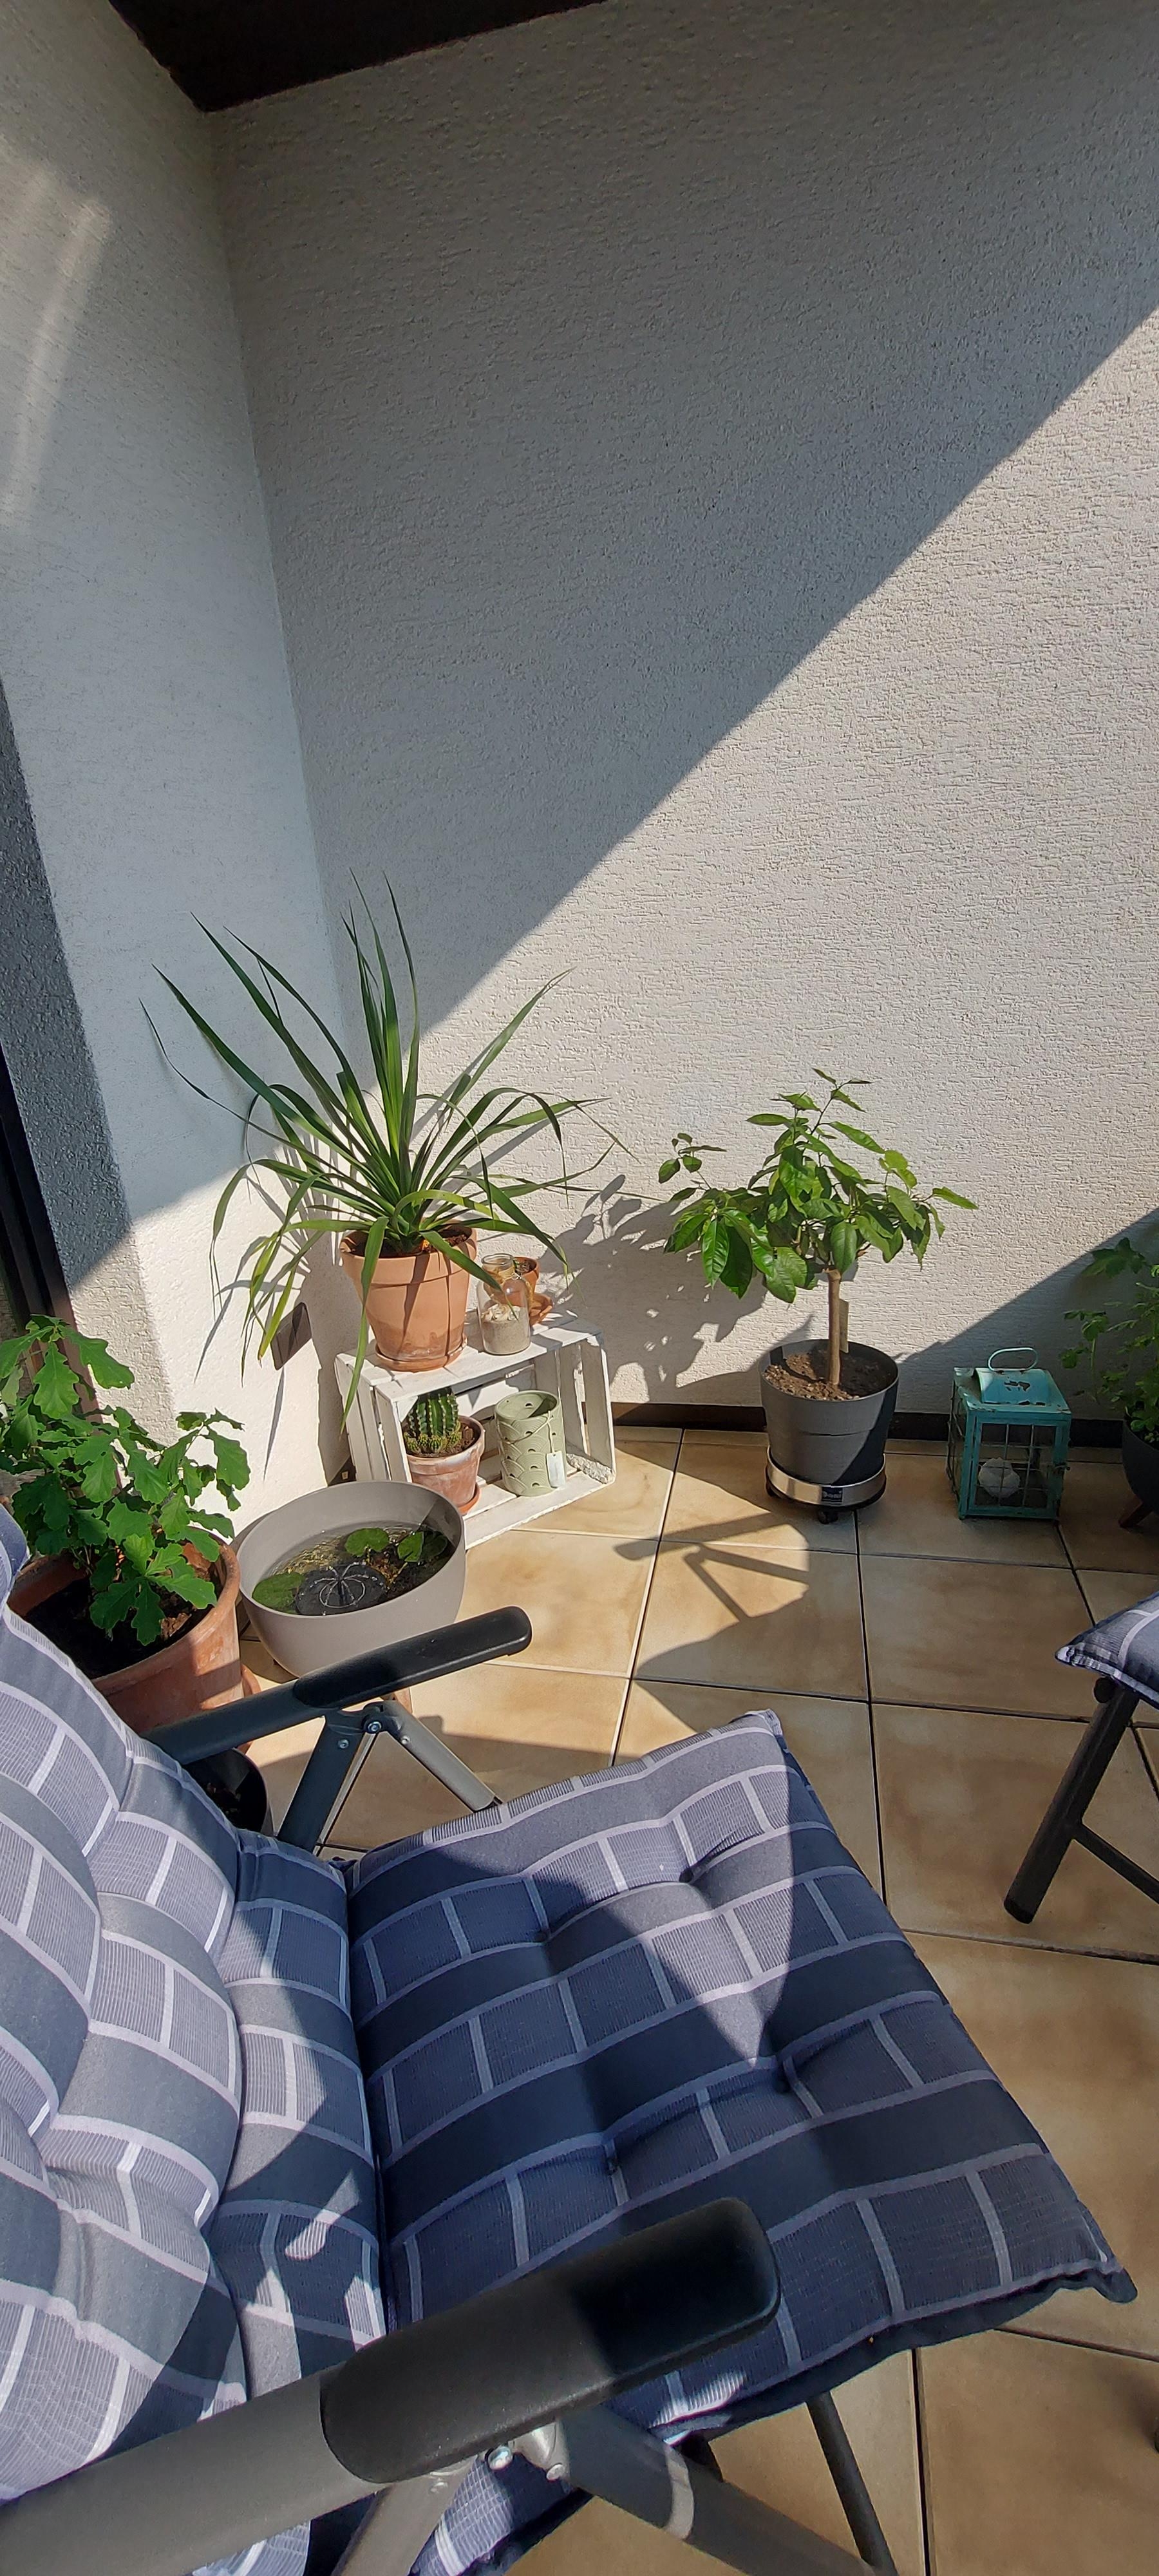 Meine Lieblingsecke 

#auszeit #livingchallenge #balkon #sonne #Miniteich 